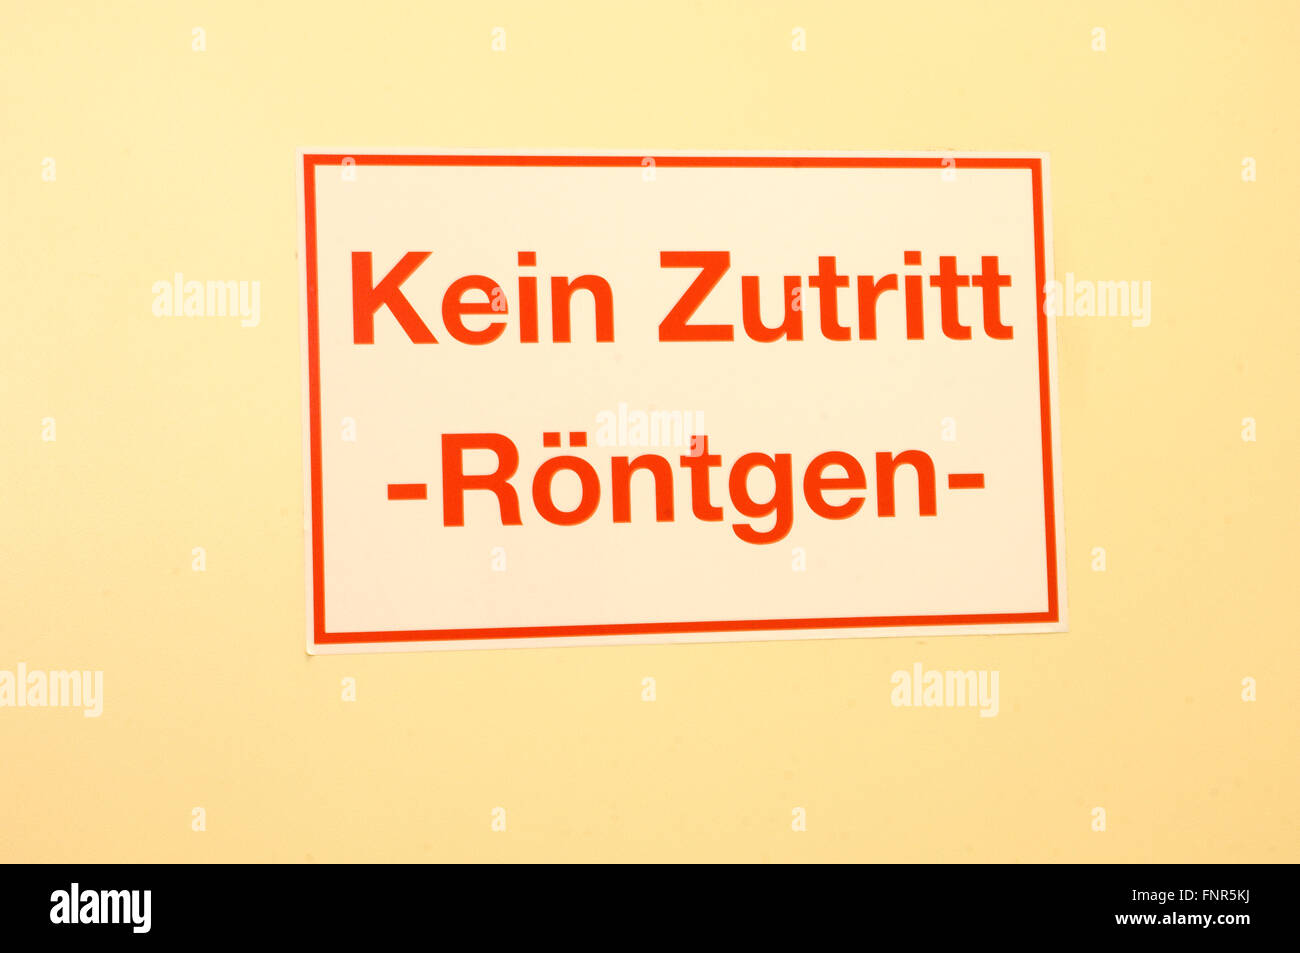 Señal de advertencia alemana "Kein Zutritt" "Sin acceso". Foto de stock